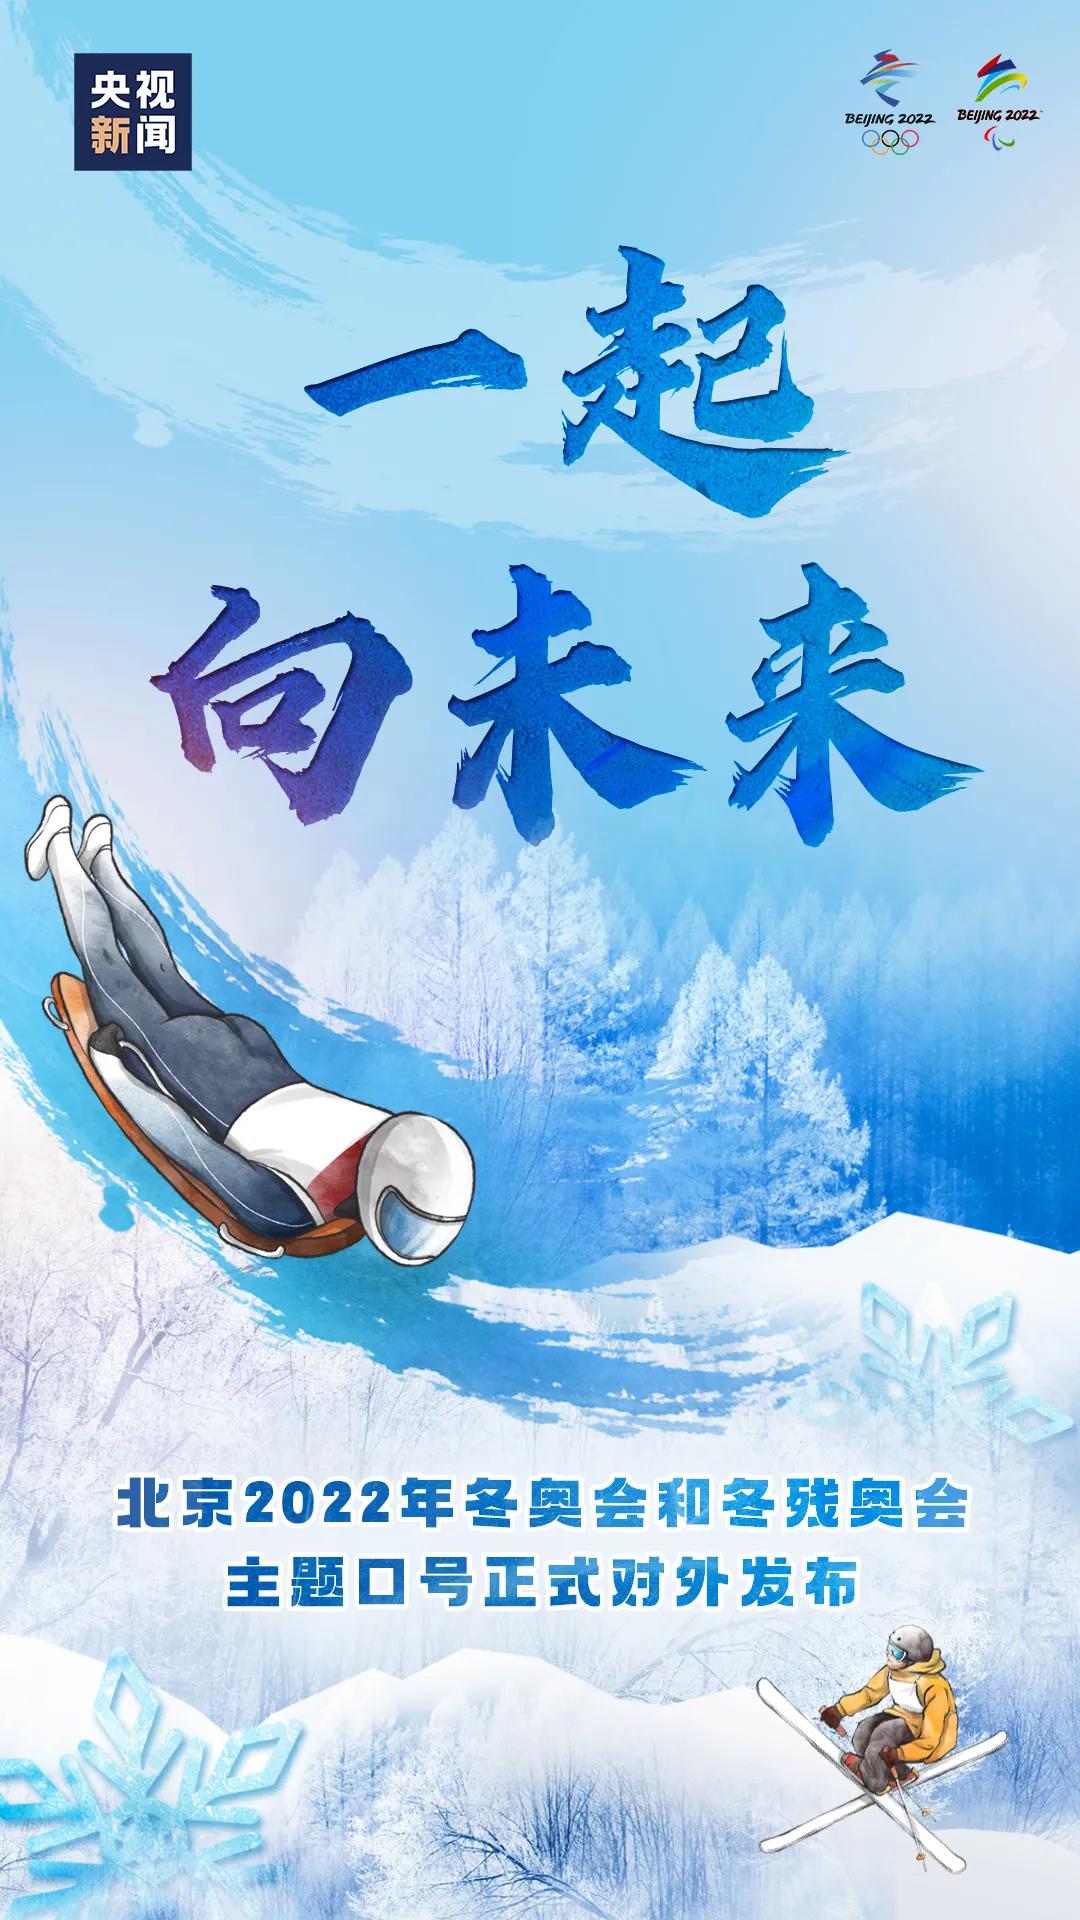 “一起向未来”！北京2022年冬奥会和冬残奥会主题口号发布